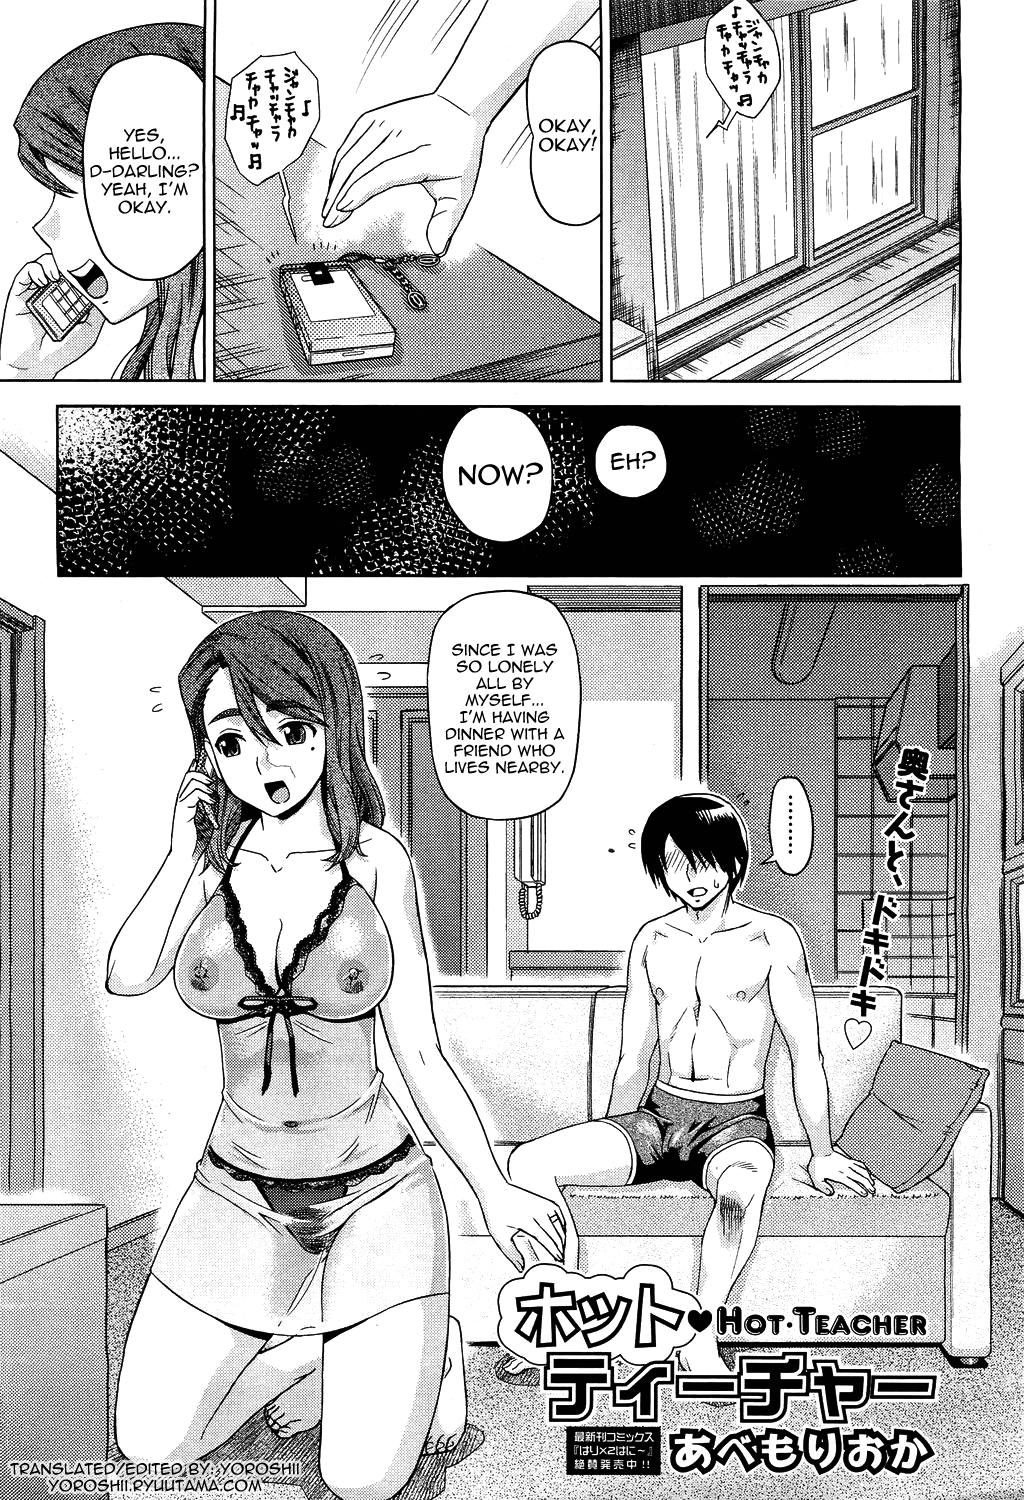 Hot porn manga Anime Hentai